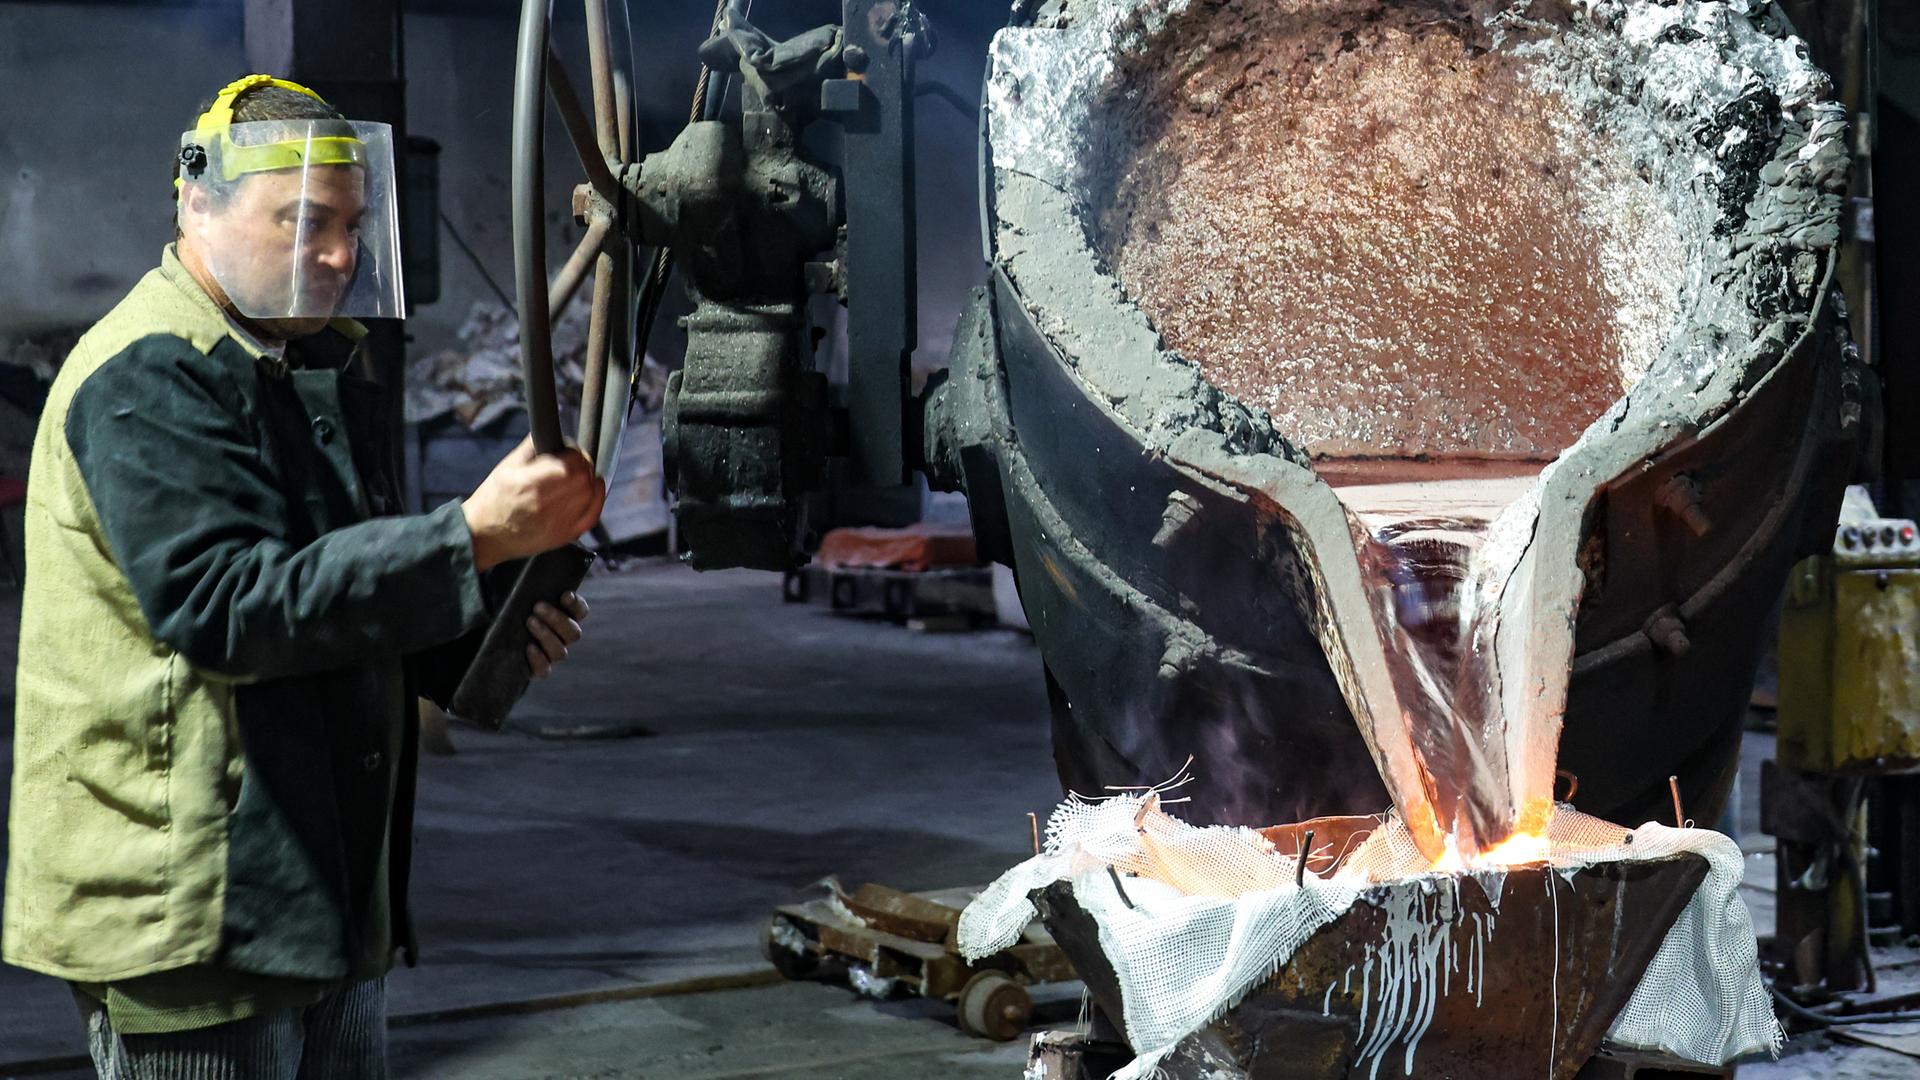 Ein Mann arbeitet an einer Produktionslinie für Aluminiumguss in Russland. Das Bild stammt von der staatlichen russischen Nachrichtenagentur TASS.